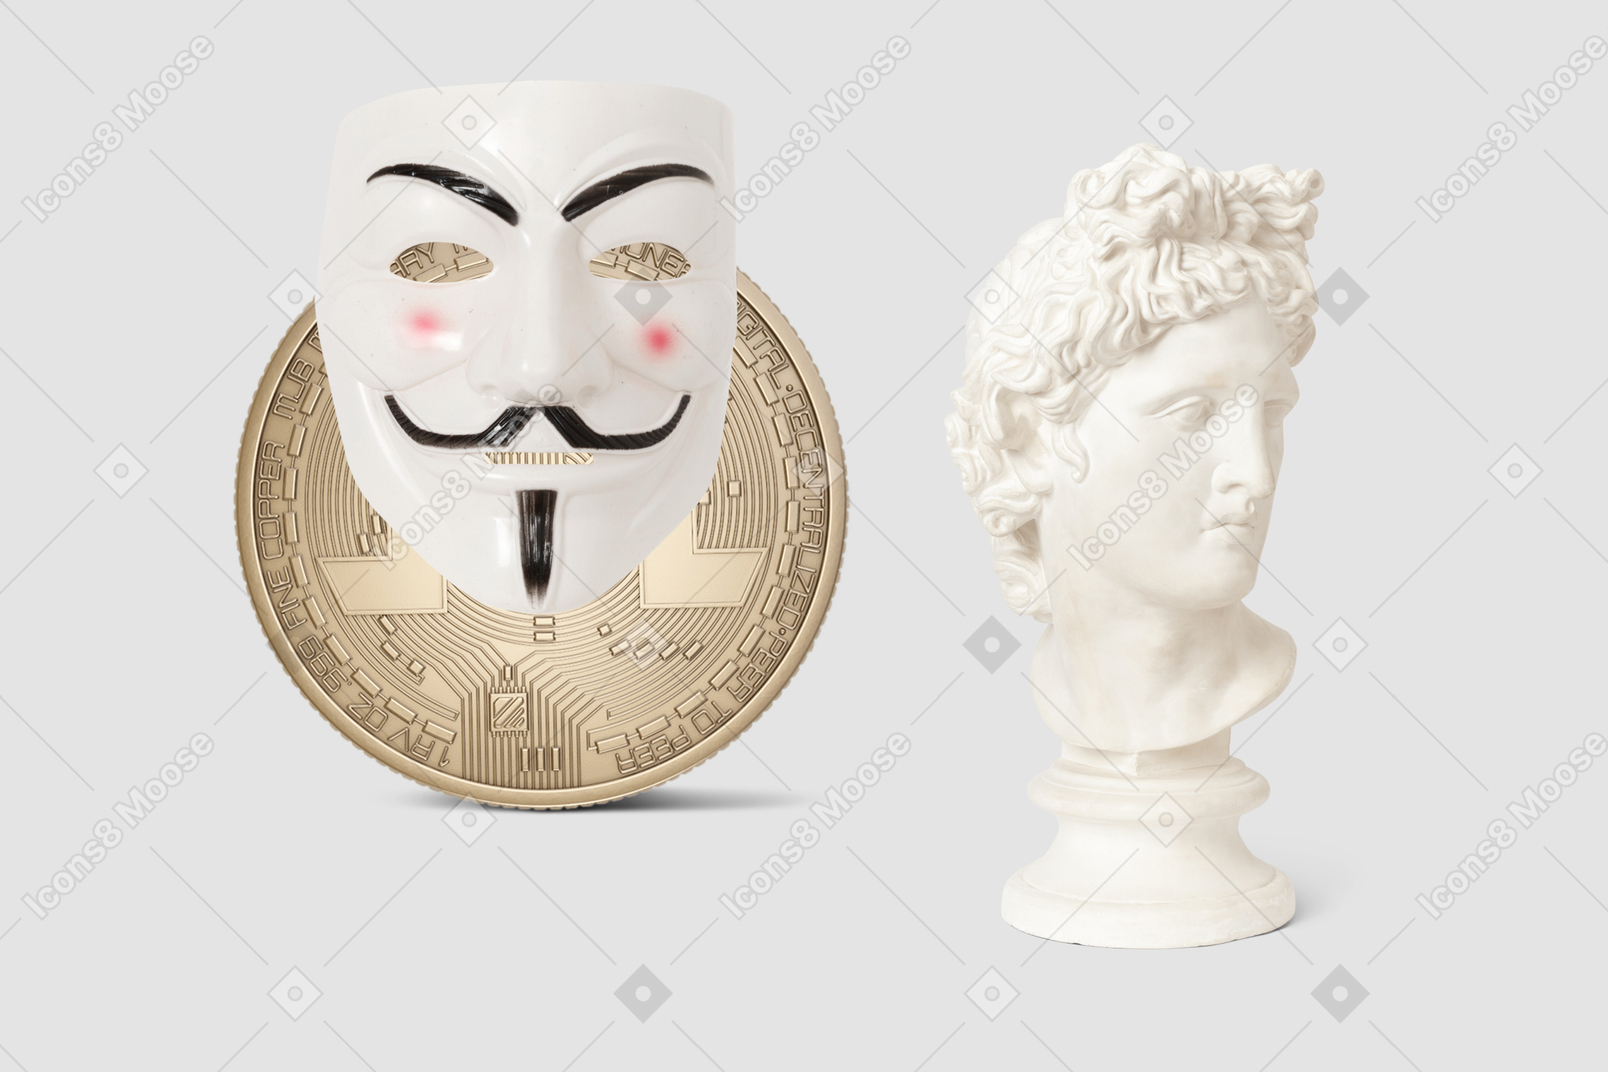 像の胸像、匿名のマスク、ビットコイン